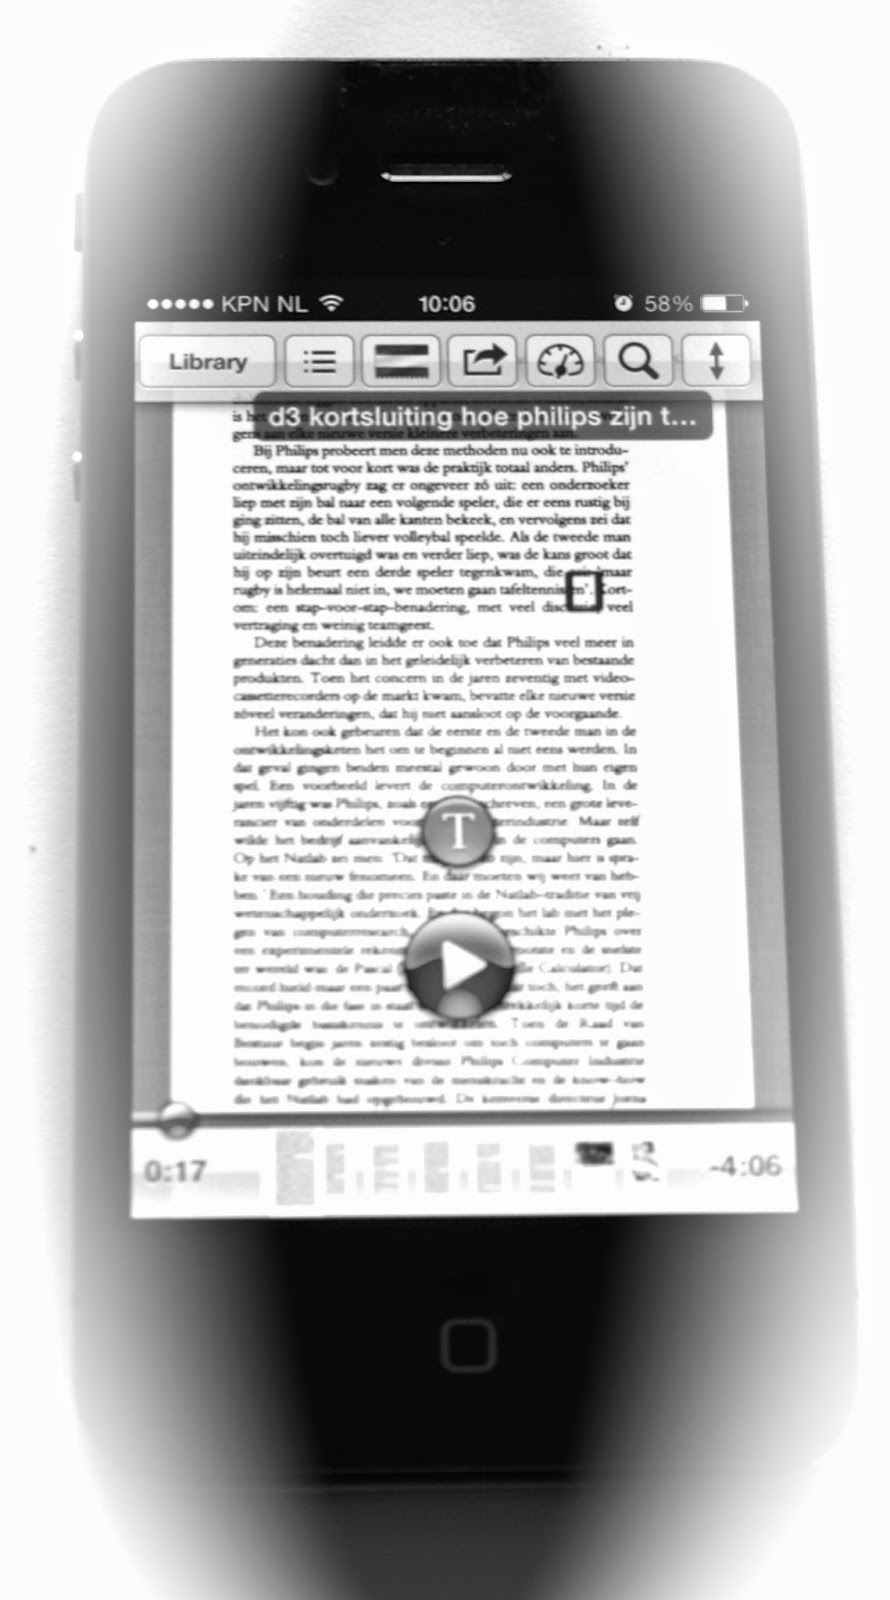 zin Historicus microscopisch Dyslexie: Teksten door IOS laten voorlezen